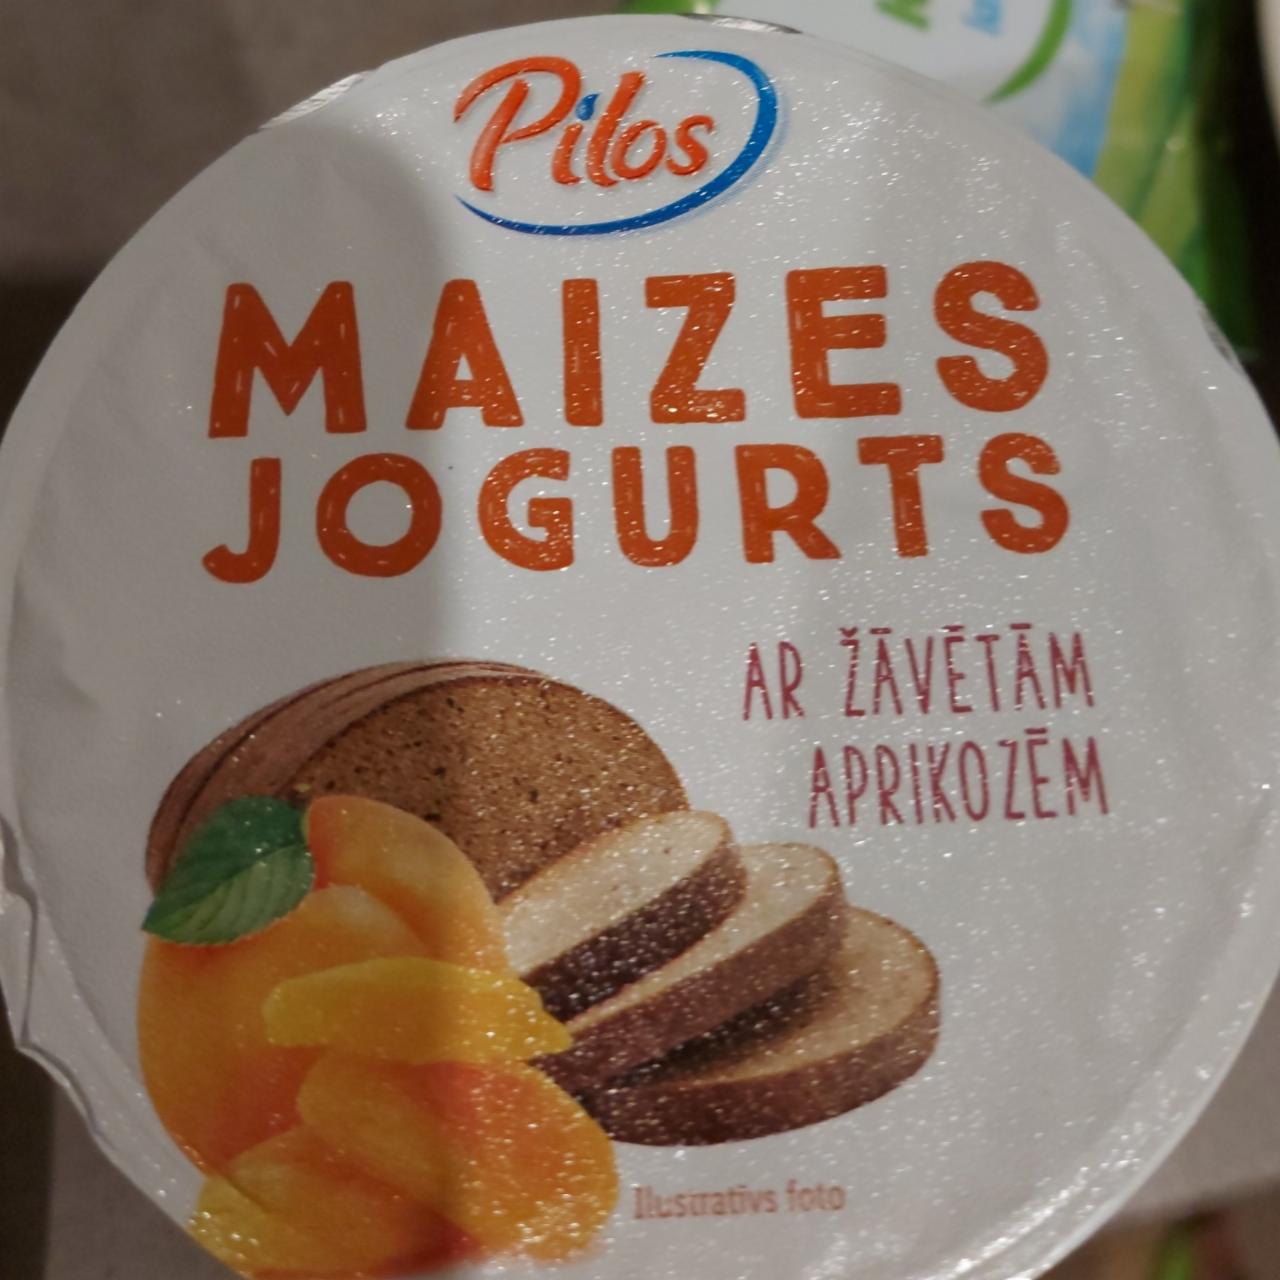 Фото - Maizes jogurts с абрикосами Pilos